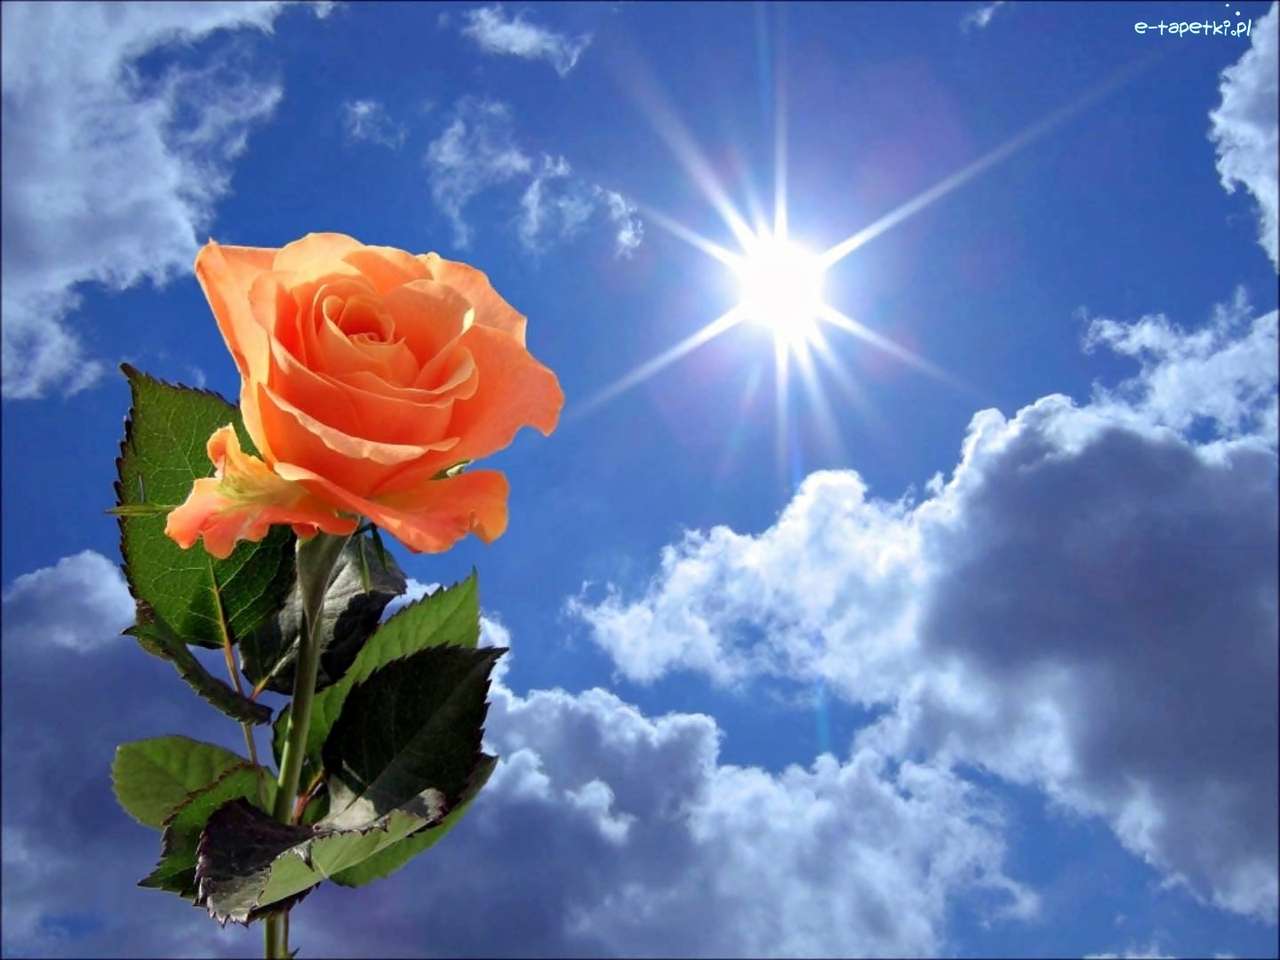 Rose på en himmelbakgrund på en solig dag pussel på nätet